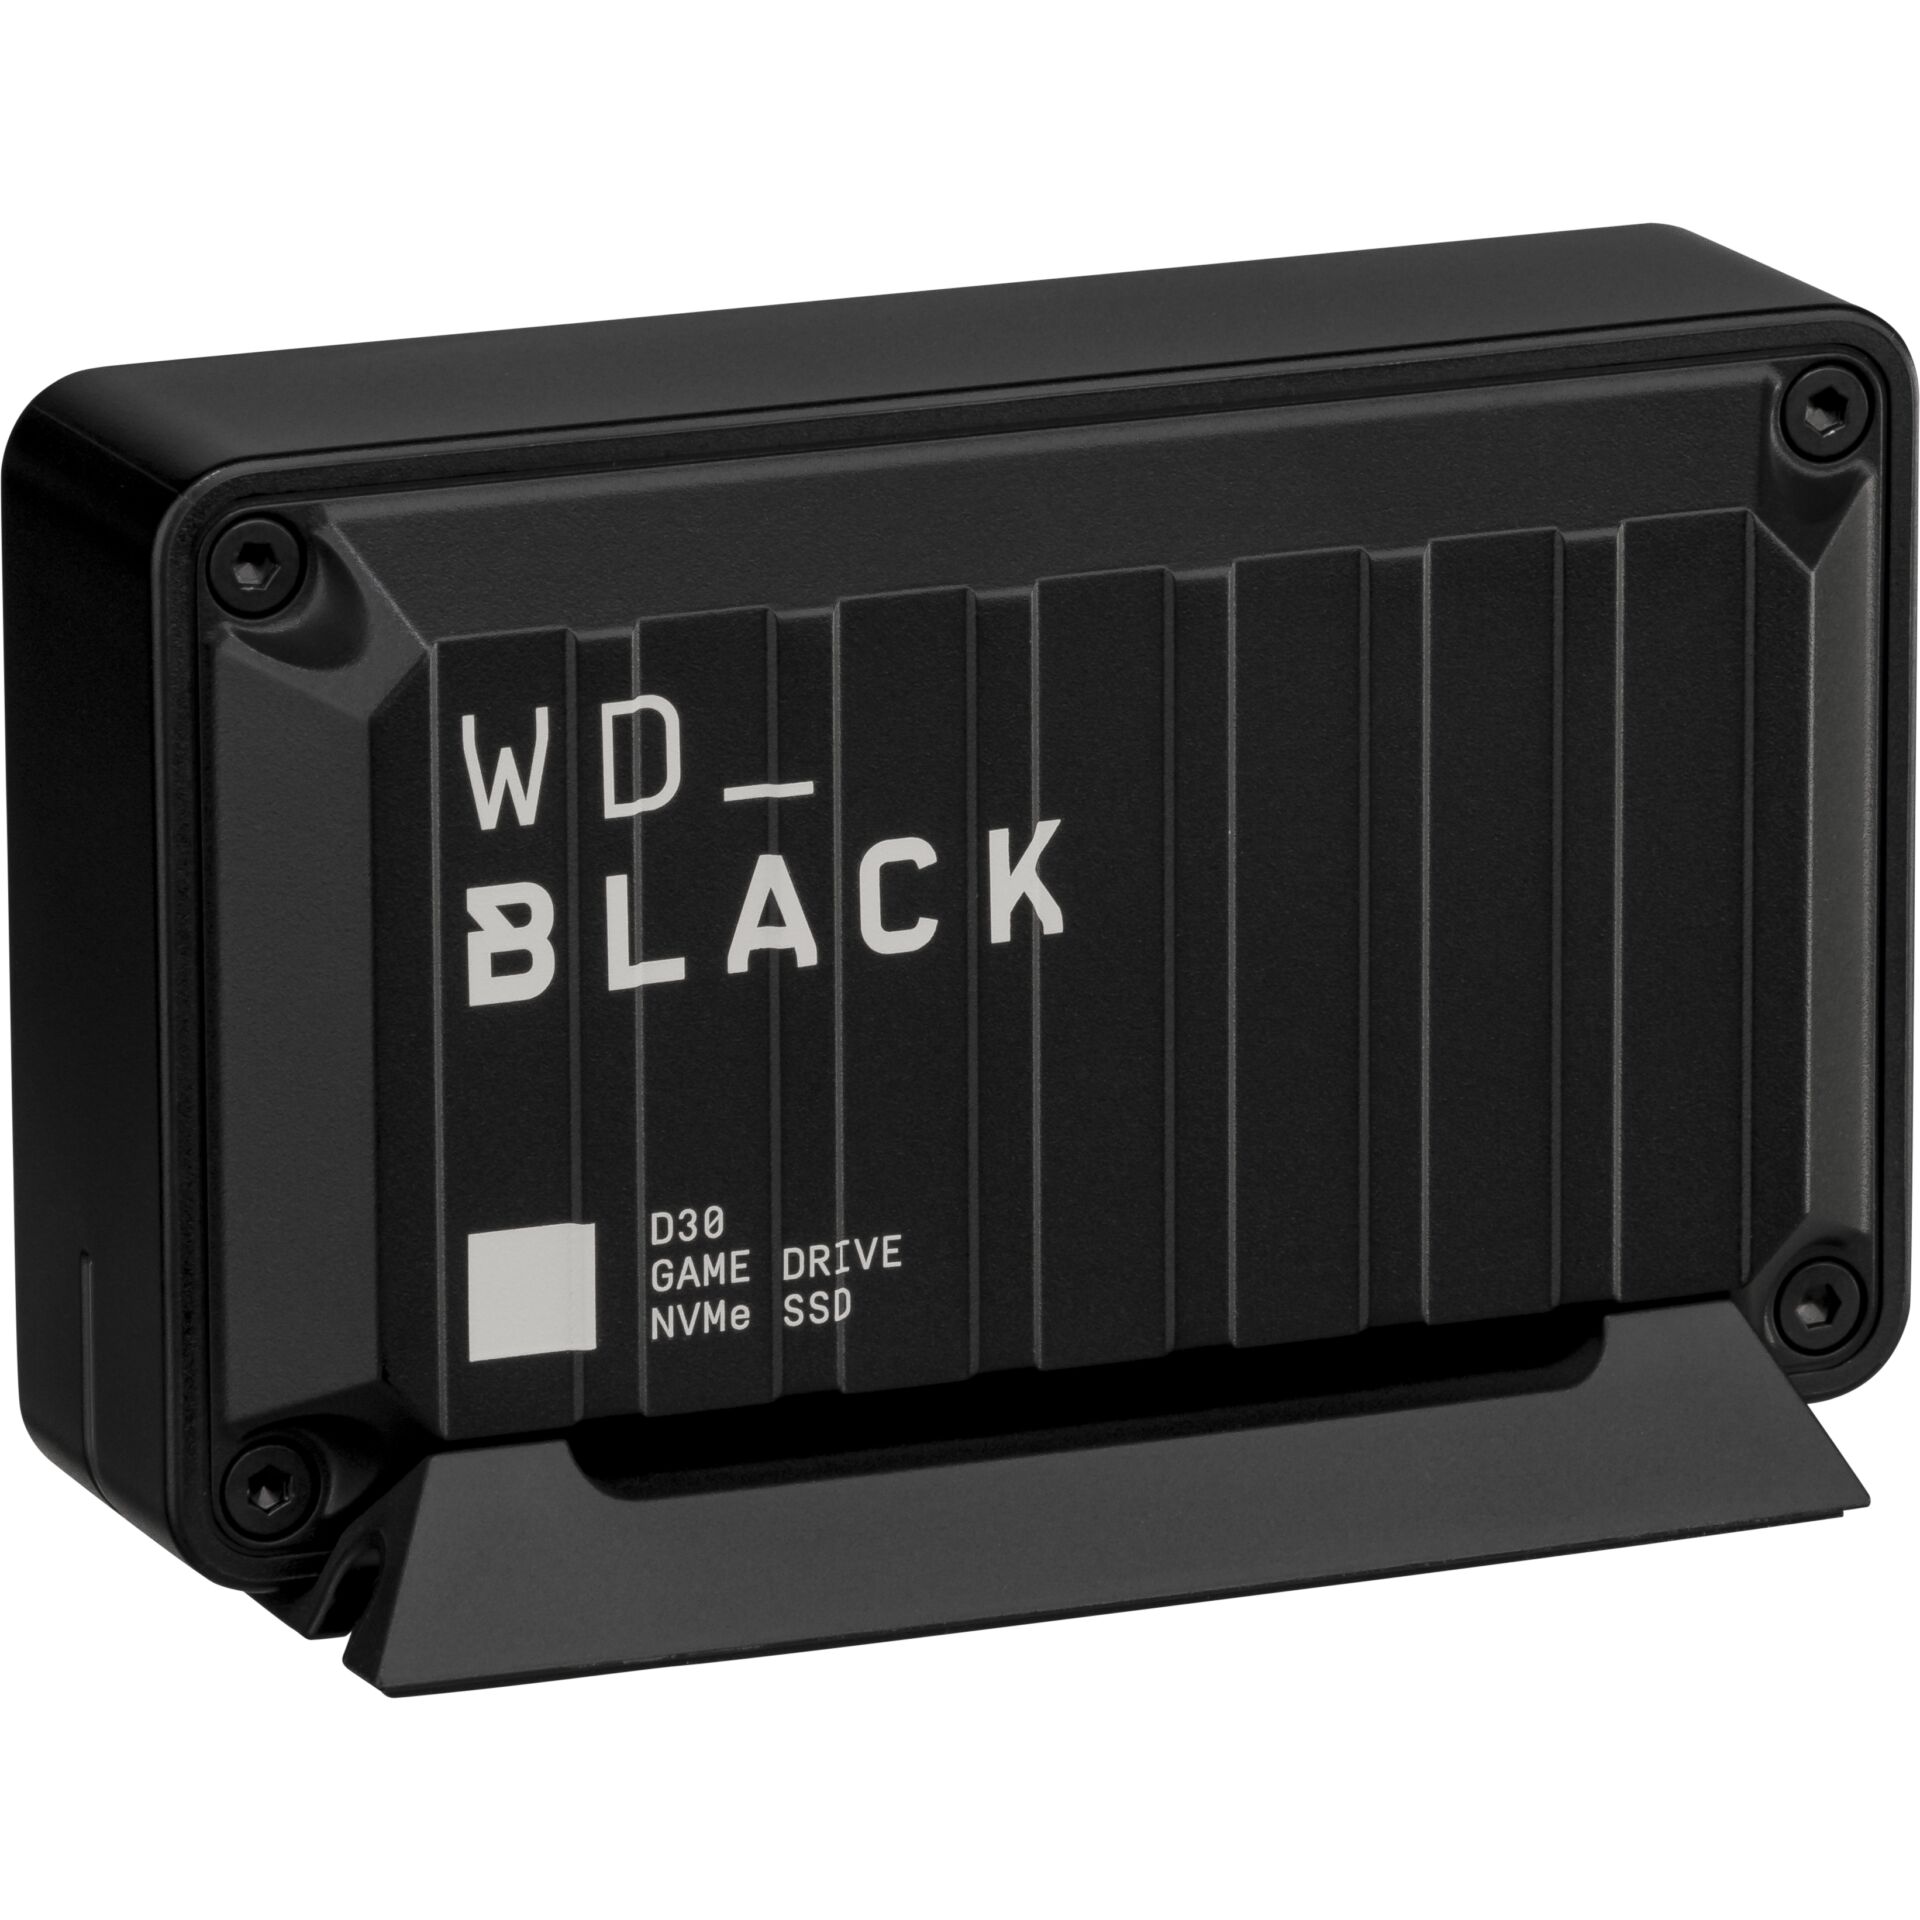 Western Digital Black D30    1TB Game Drive SSD     WDBATL00